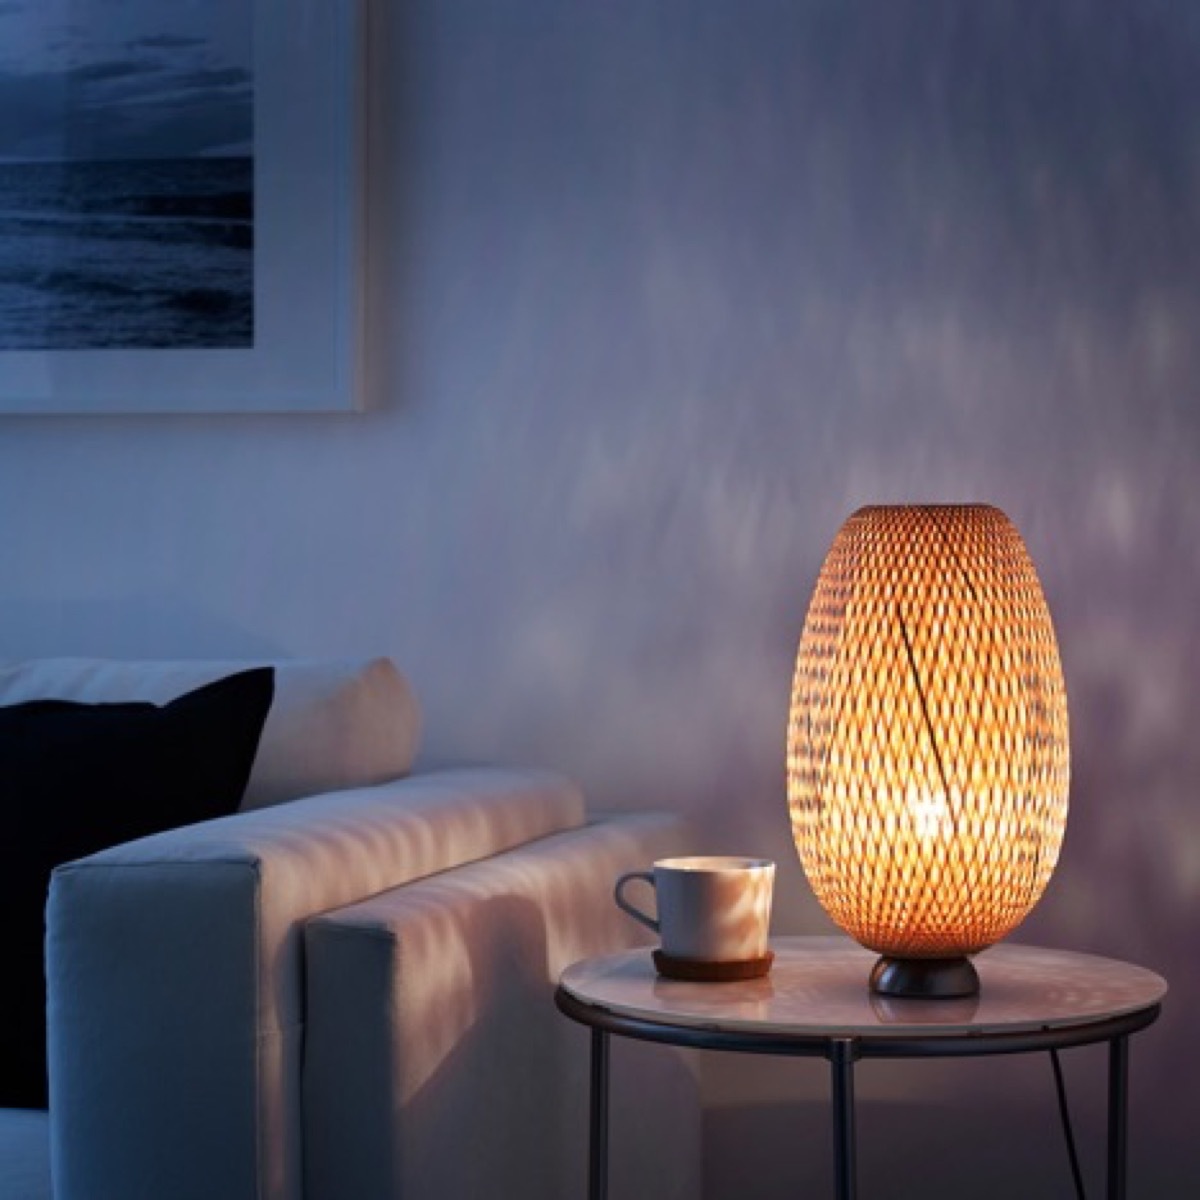 Boja woven bamboo lamp in room